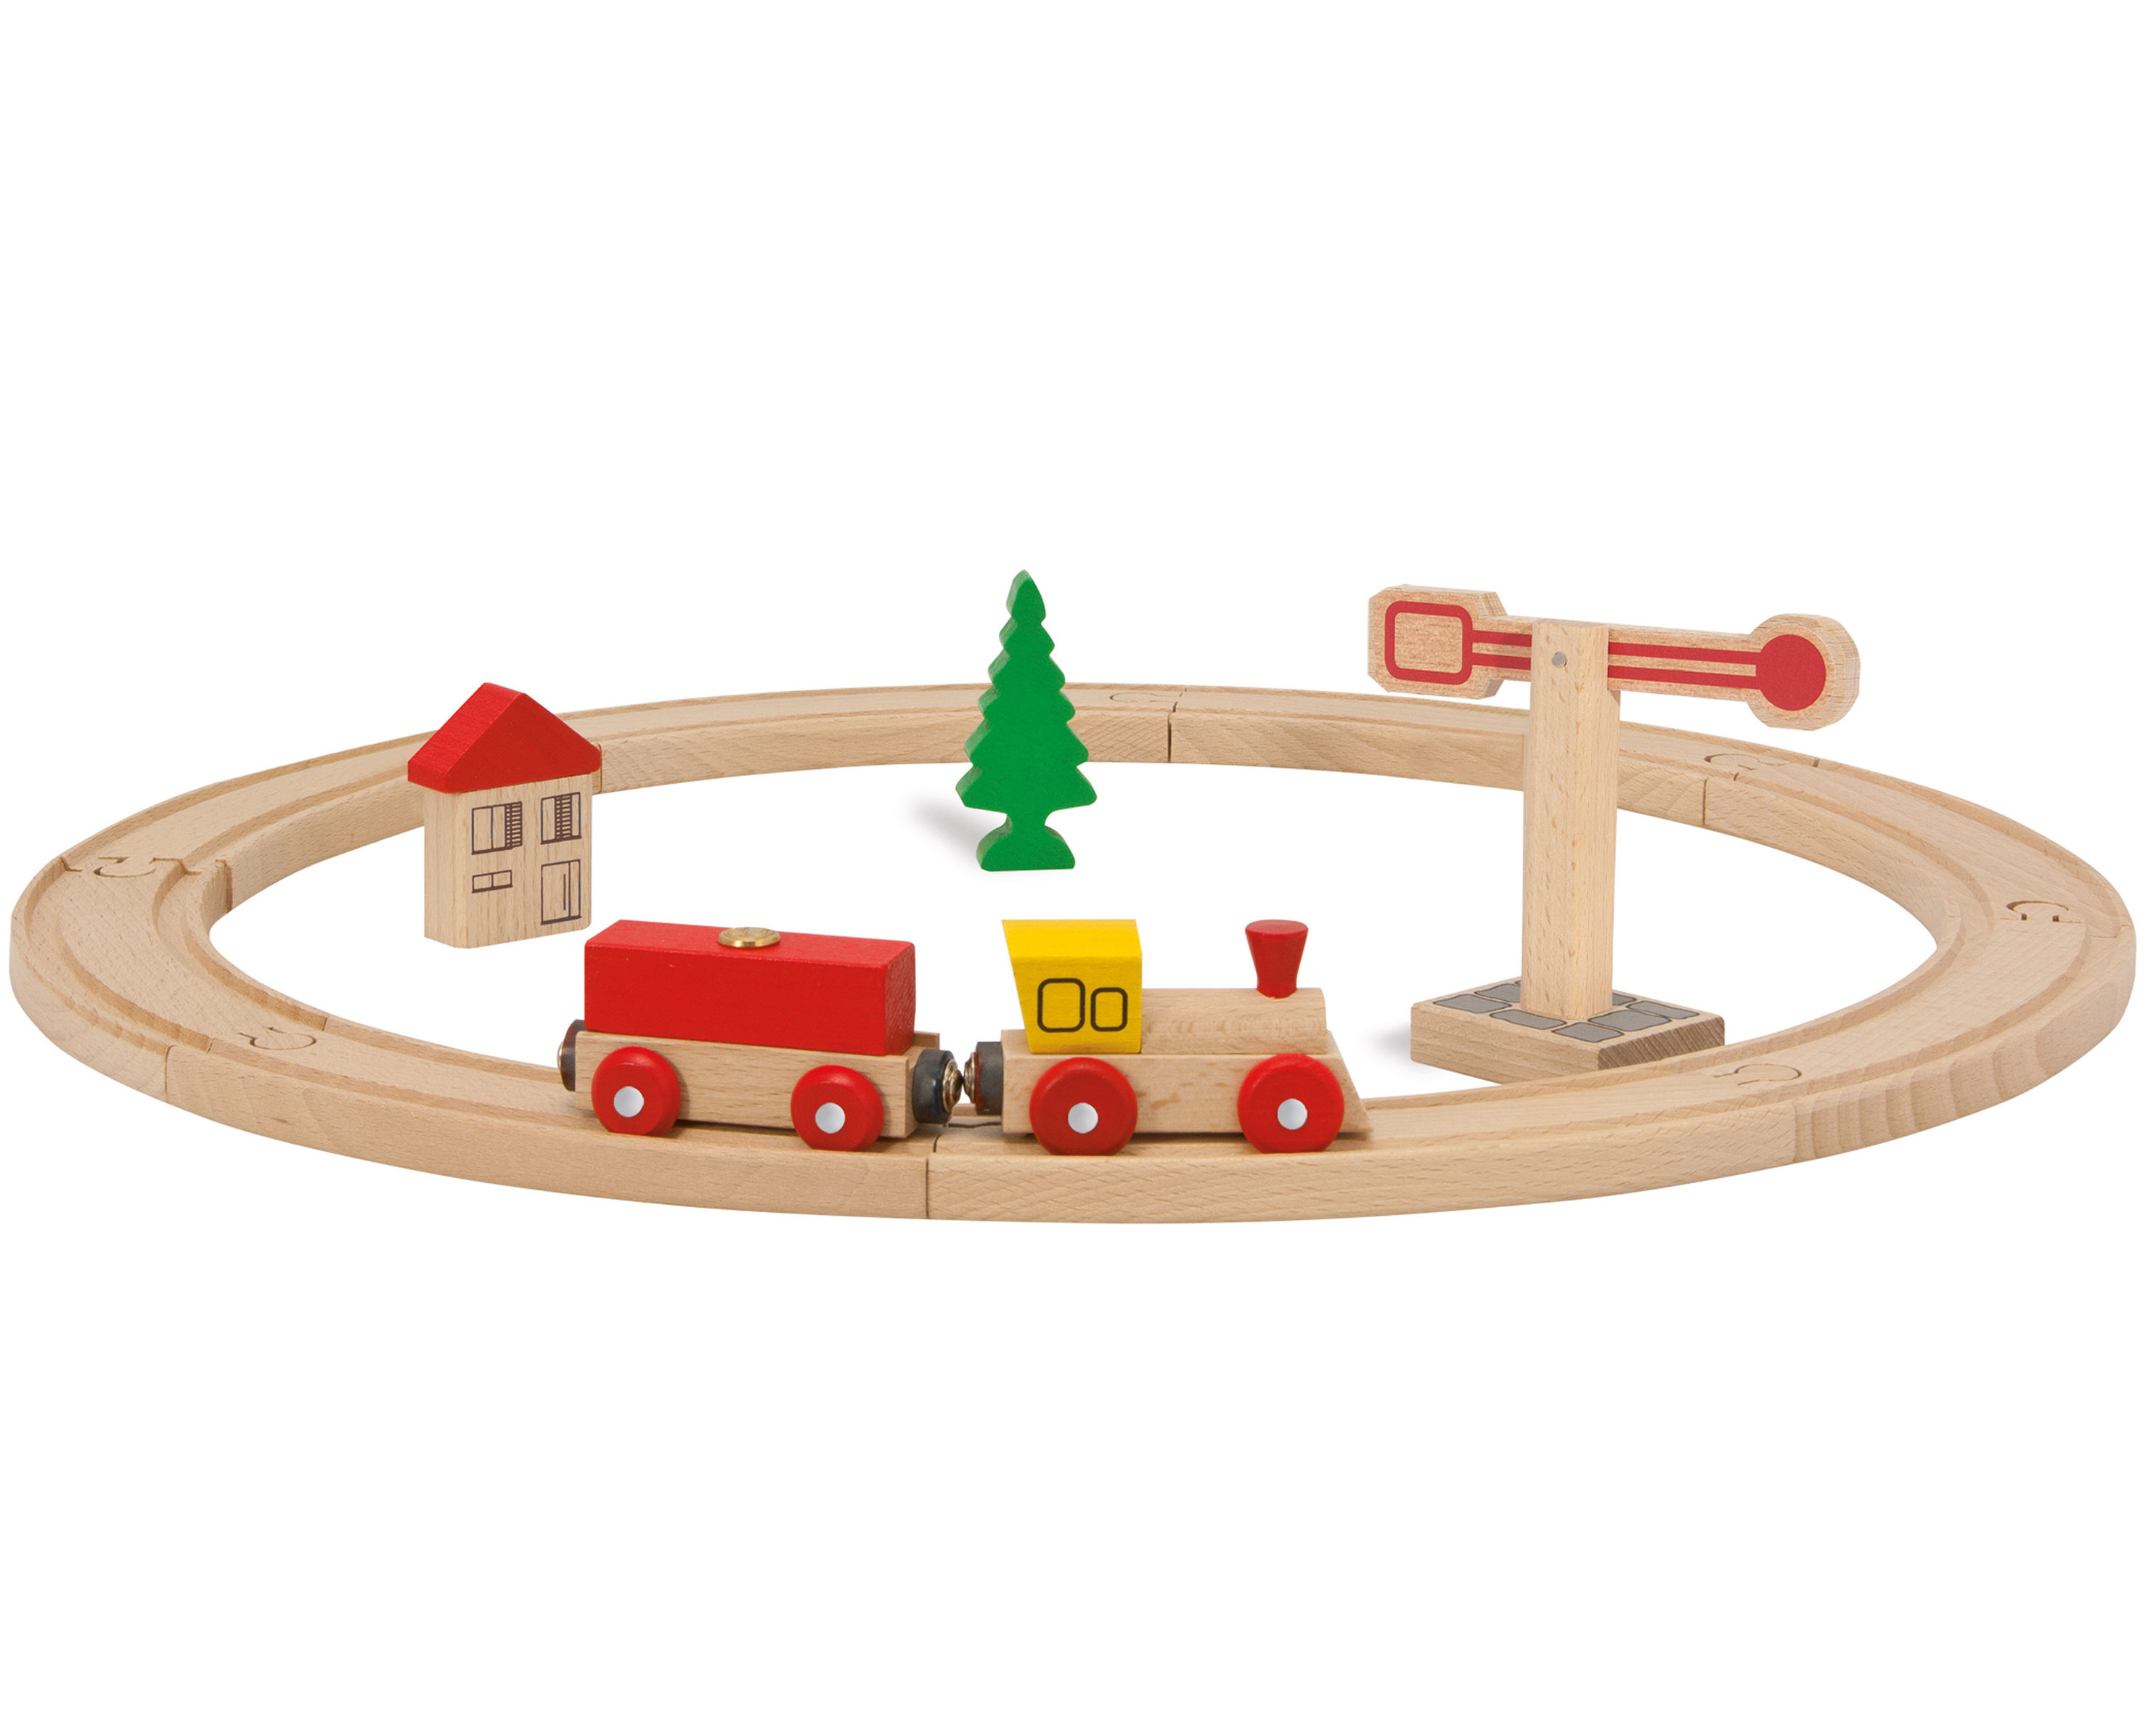 Spielzeug-Eisenbahn KREIS 20-teilig aus Holz | Weltbild.ch